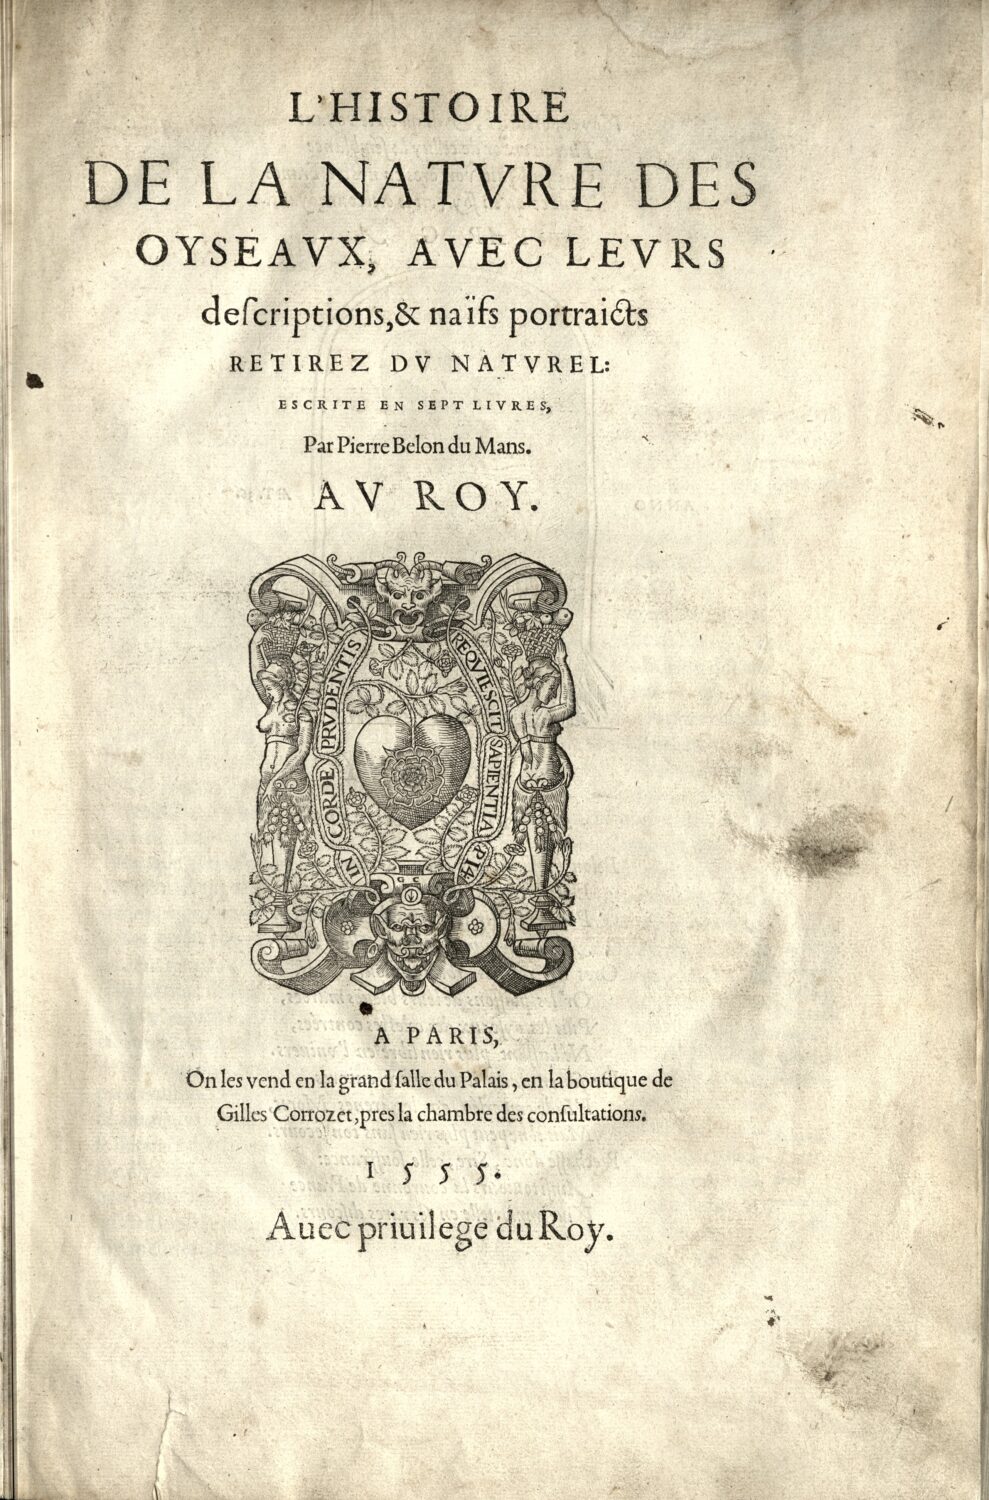 The first page of L'histoire de la nature des oyseaux by Pierre Belon